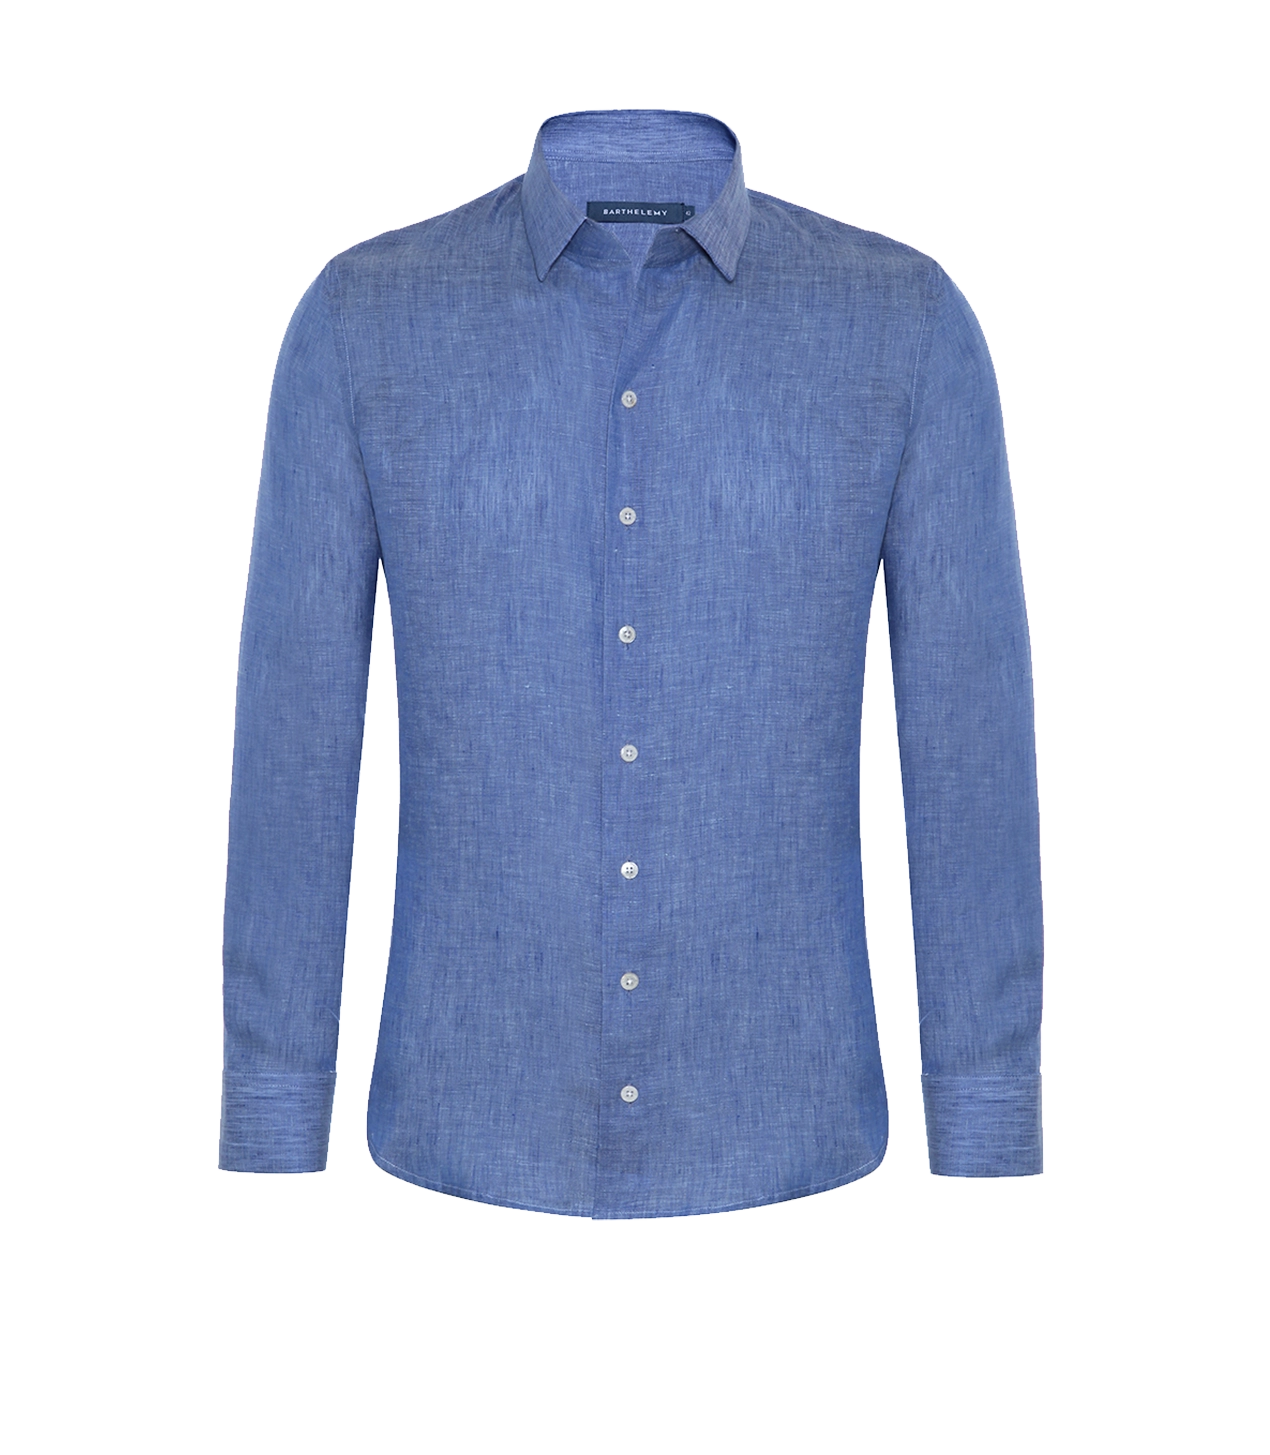 Tailored Linen Shirt Medium Blue - Barthelemy